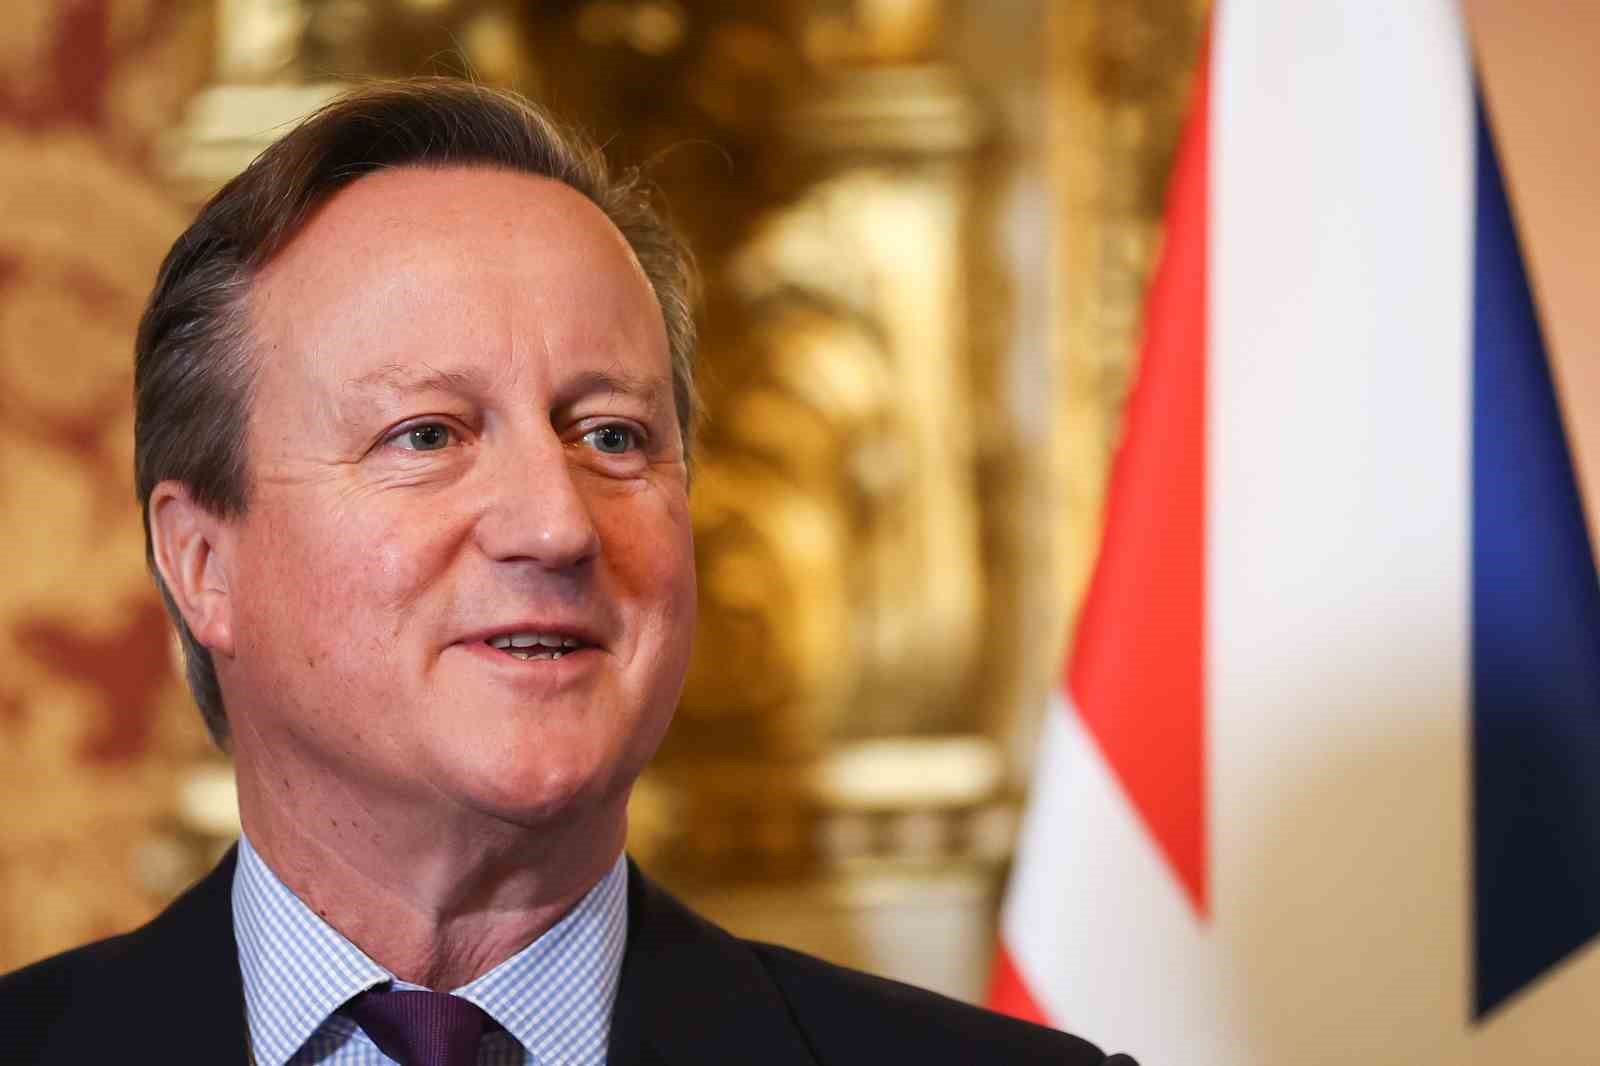 İngiltere Dışişleri Bakanı Cameron: “Husilere müdahale etmekten başka alternatifimiz yoktu”